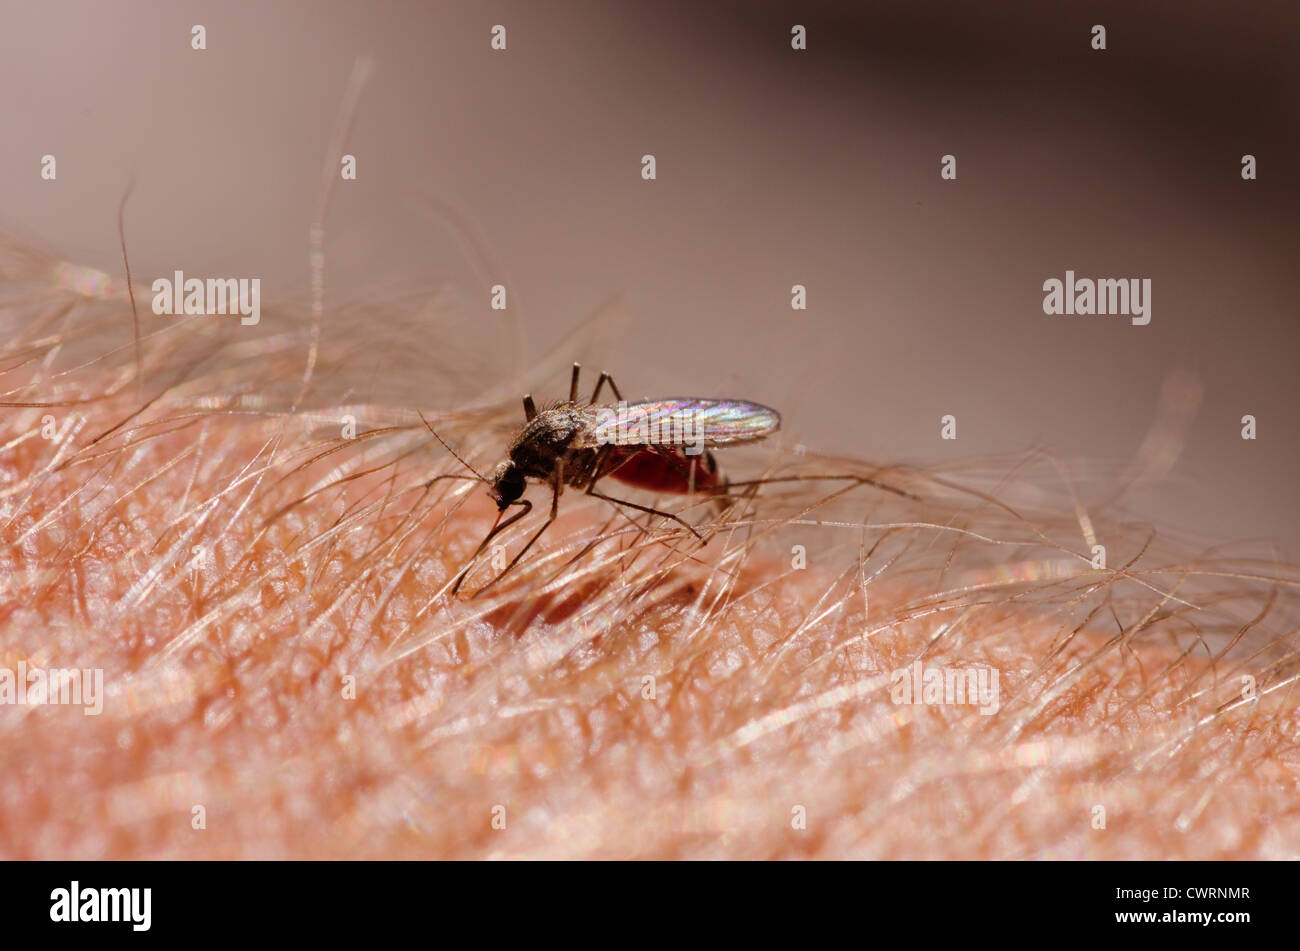 Immagine macro di un sangue zanzara riempito di mordere un peloso braccio umano Foto Stock